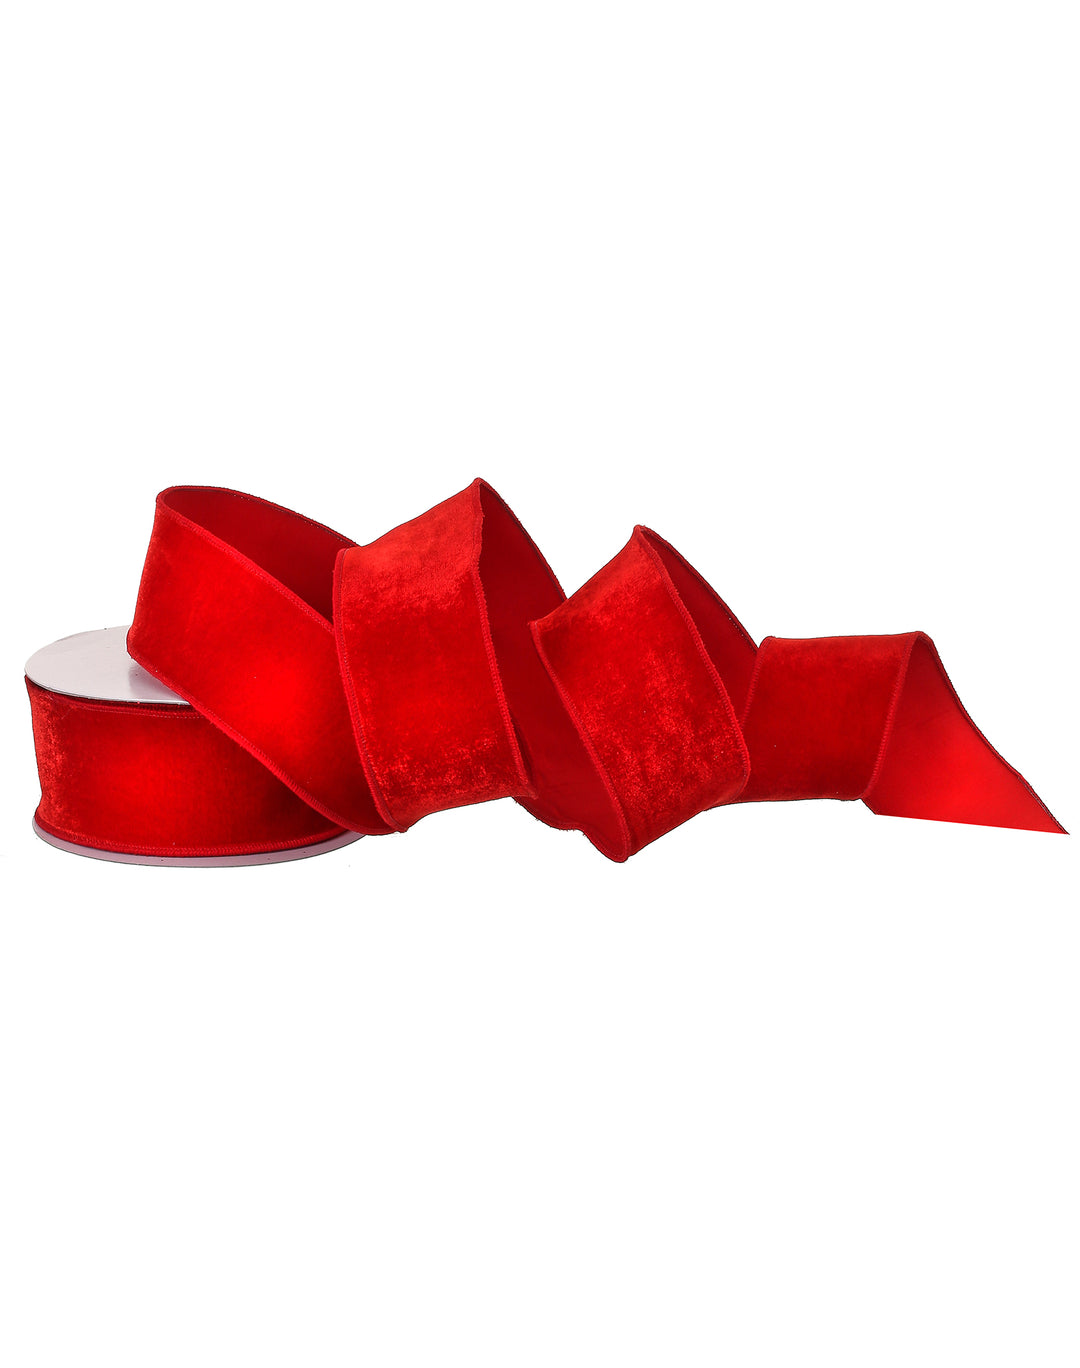 Red Flashy Velvet Ribbon, 2.5 x 10yd